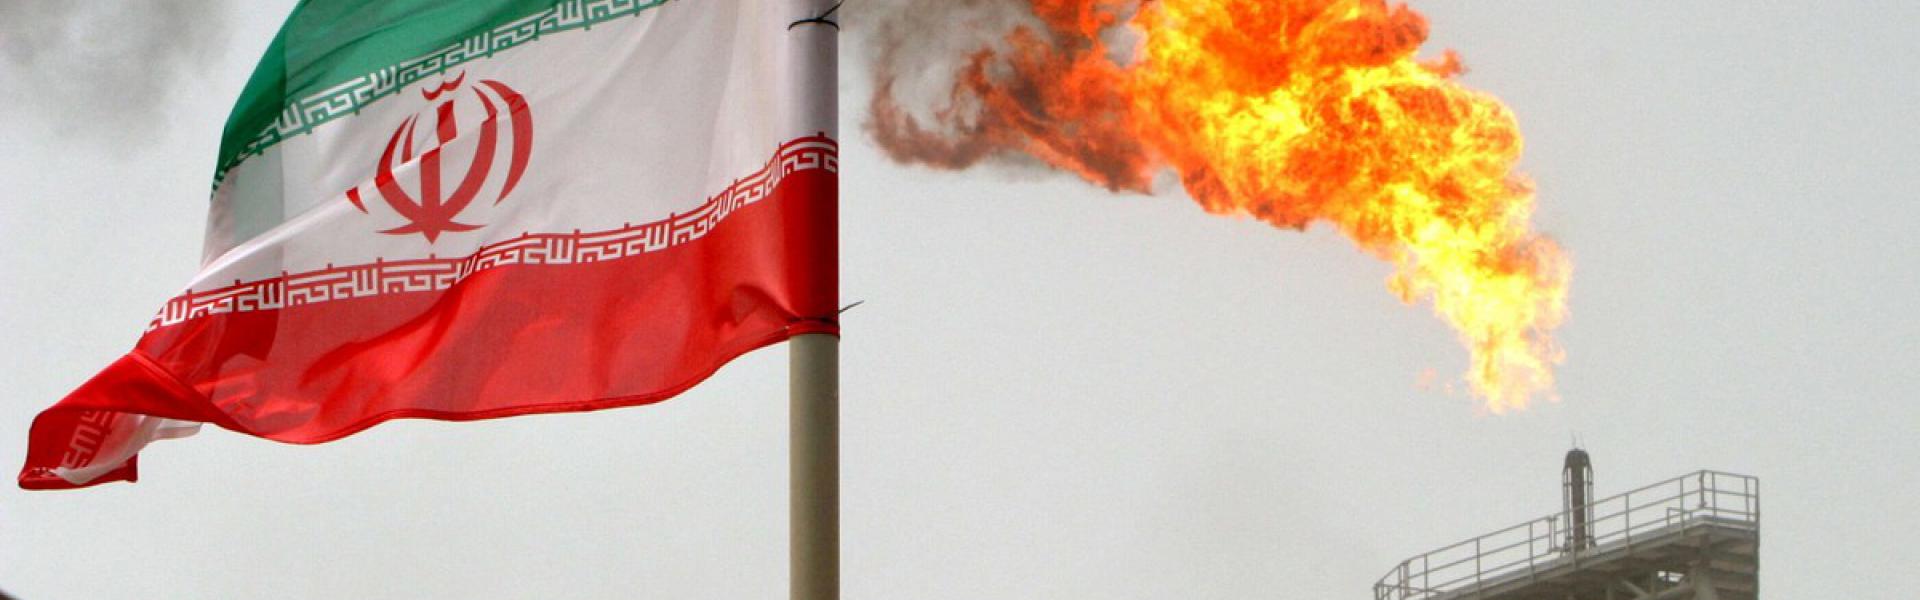 إيران تنتج أكثر من 3 ملايين برميل من النفط الخام يوميا